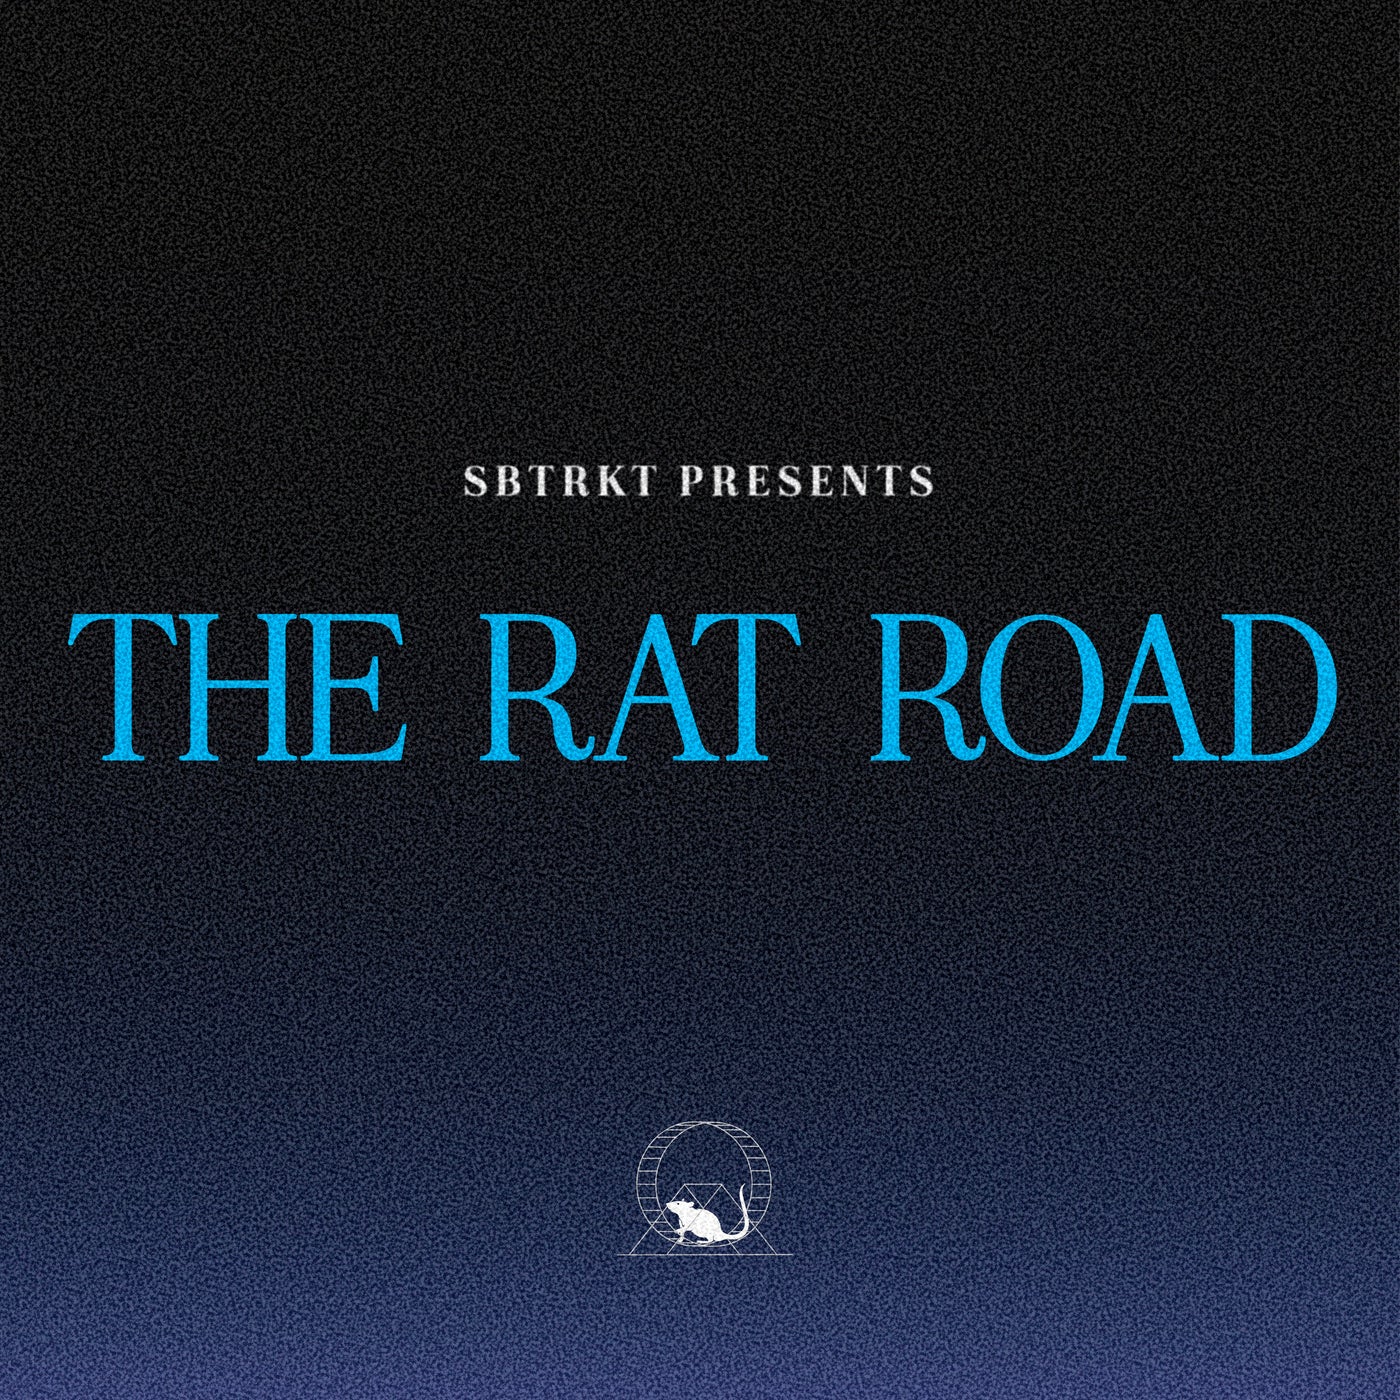 THE RAT ROAD